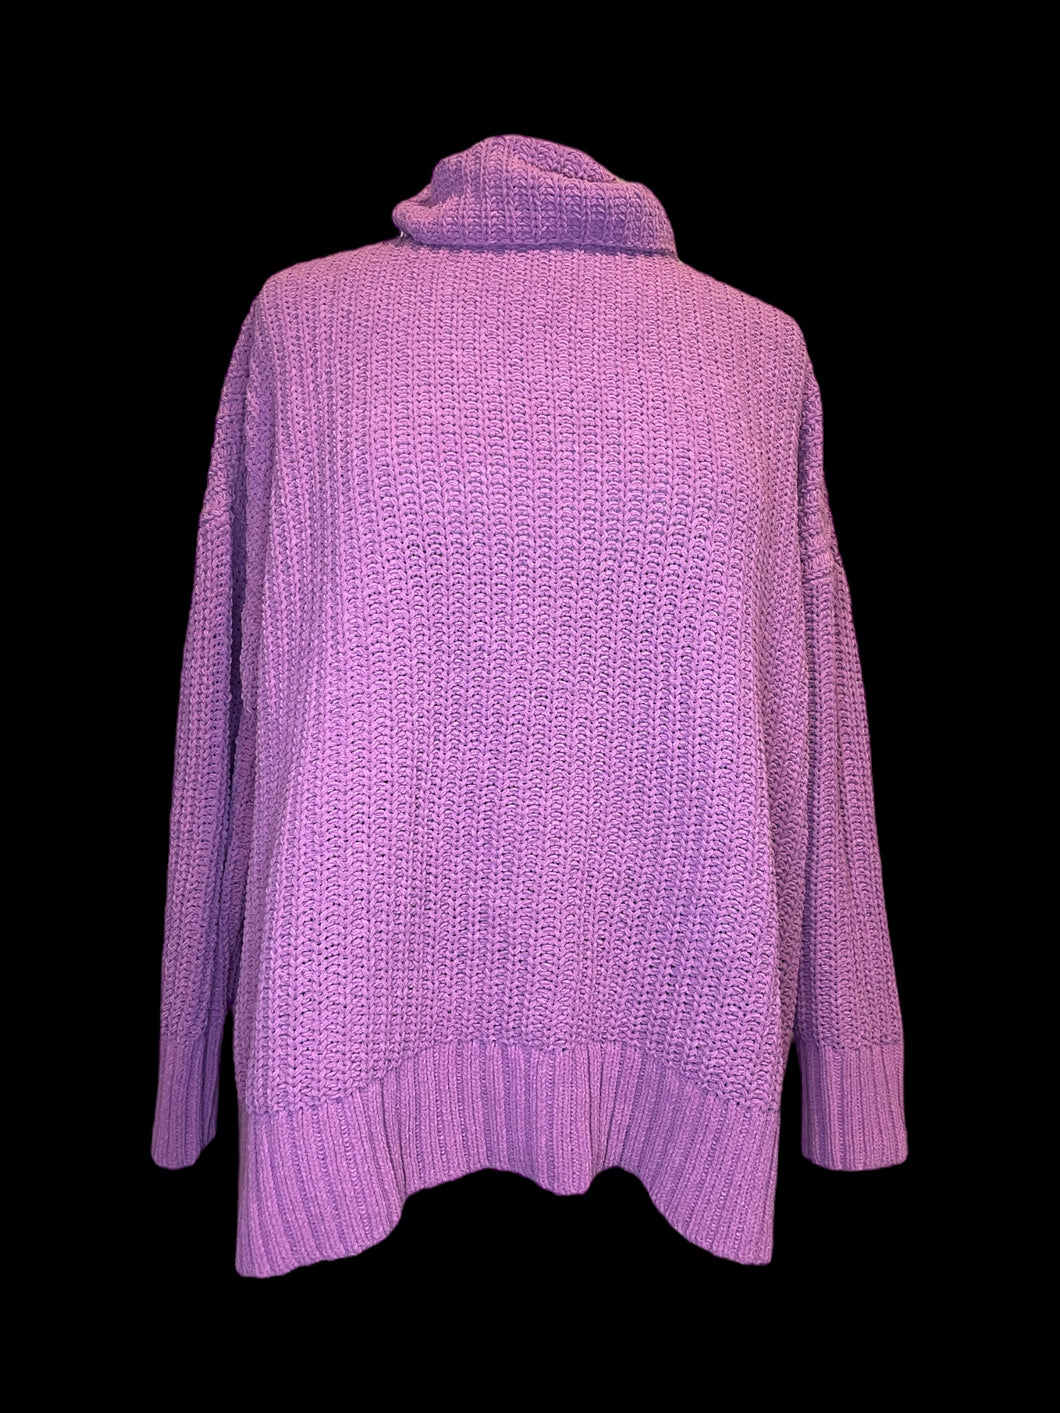 2X Pink purple knit long sleeve turtleneck sweater